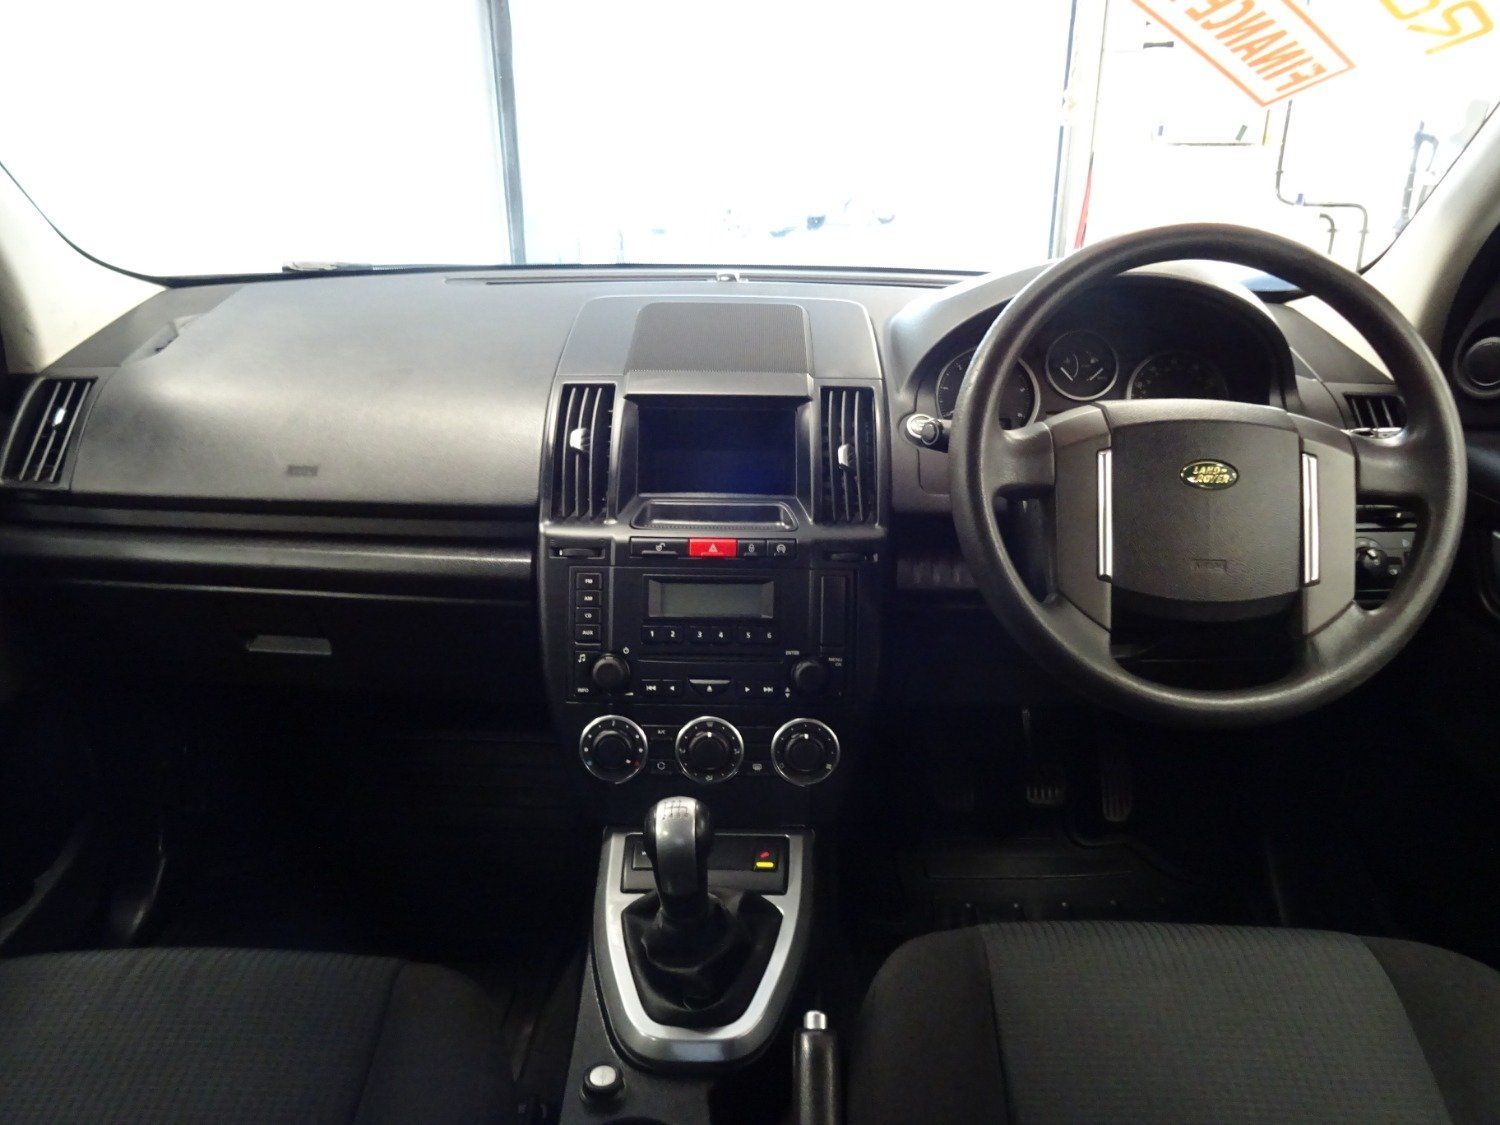 2013 Land Rover Freelander 2 eD4 - INTERIOR 